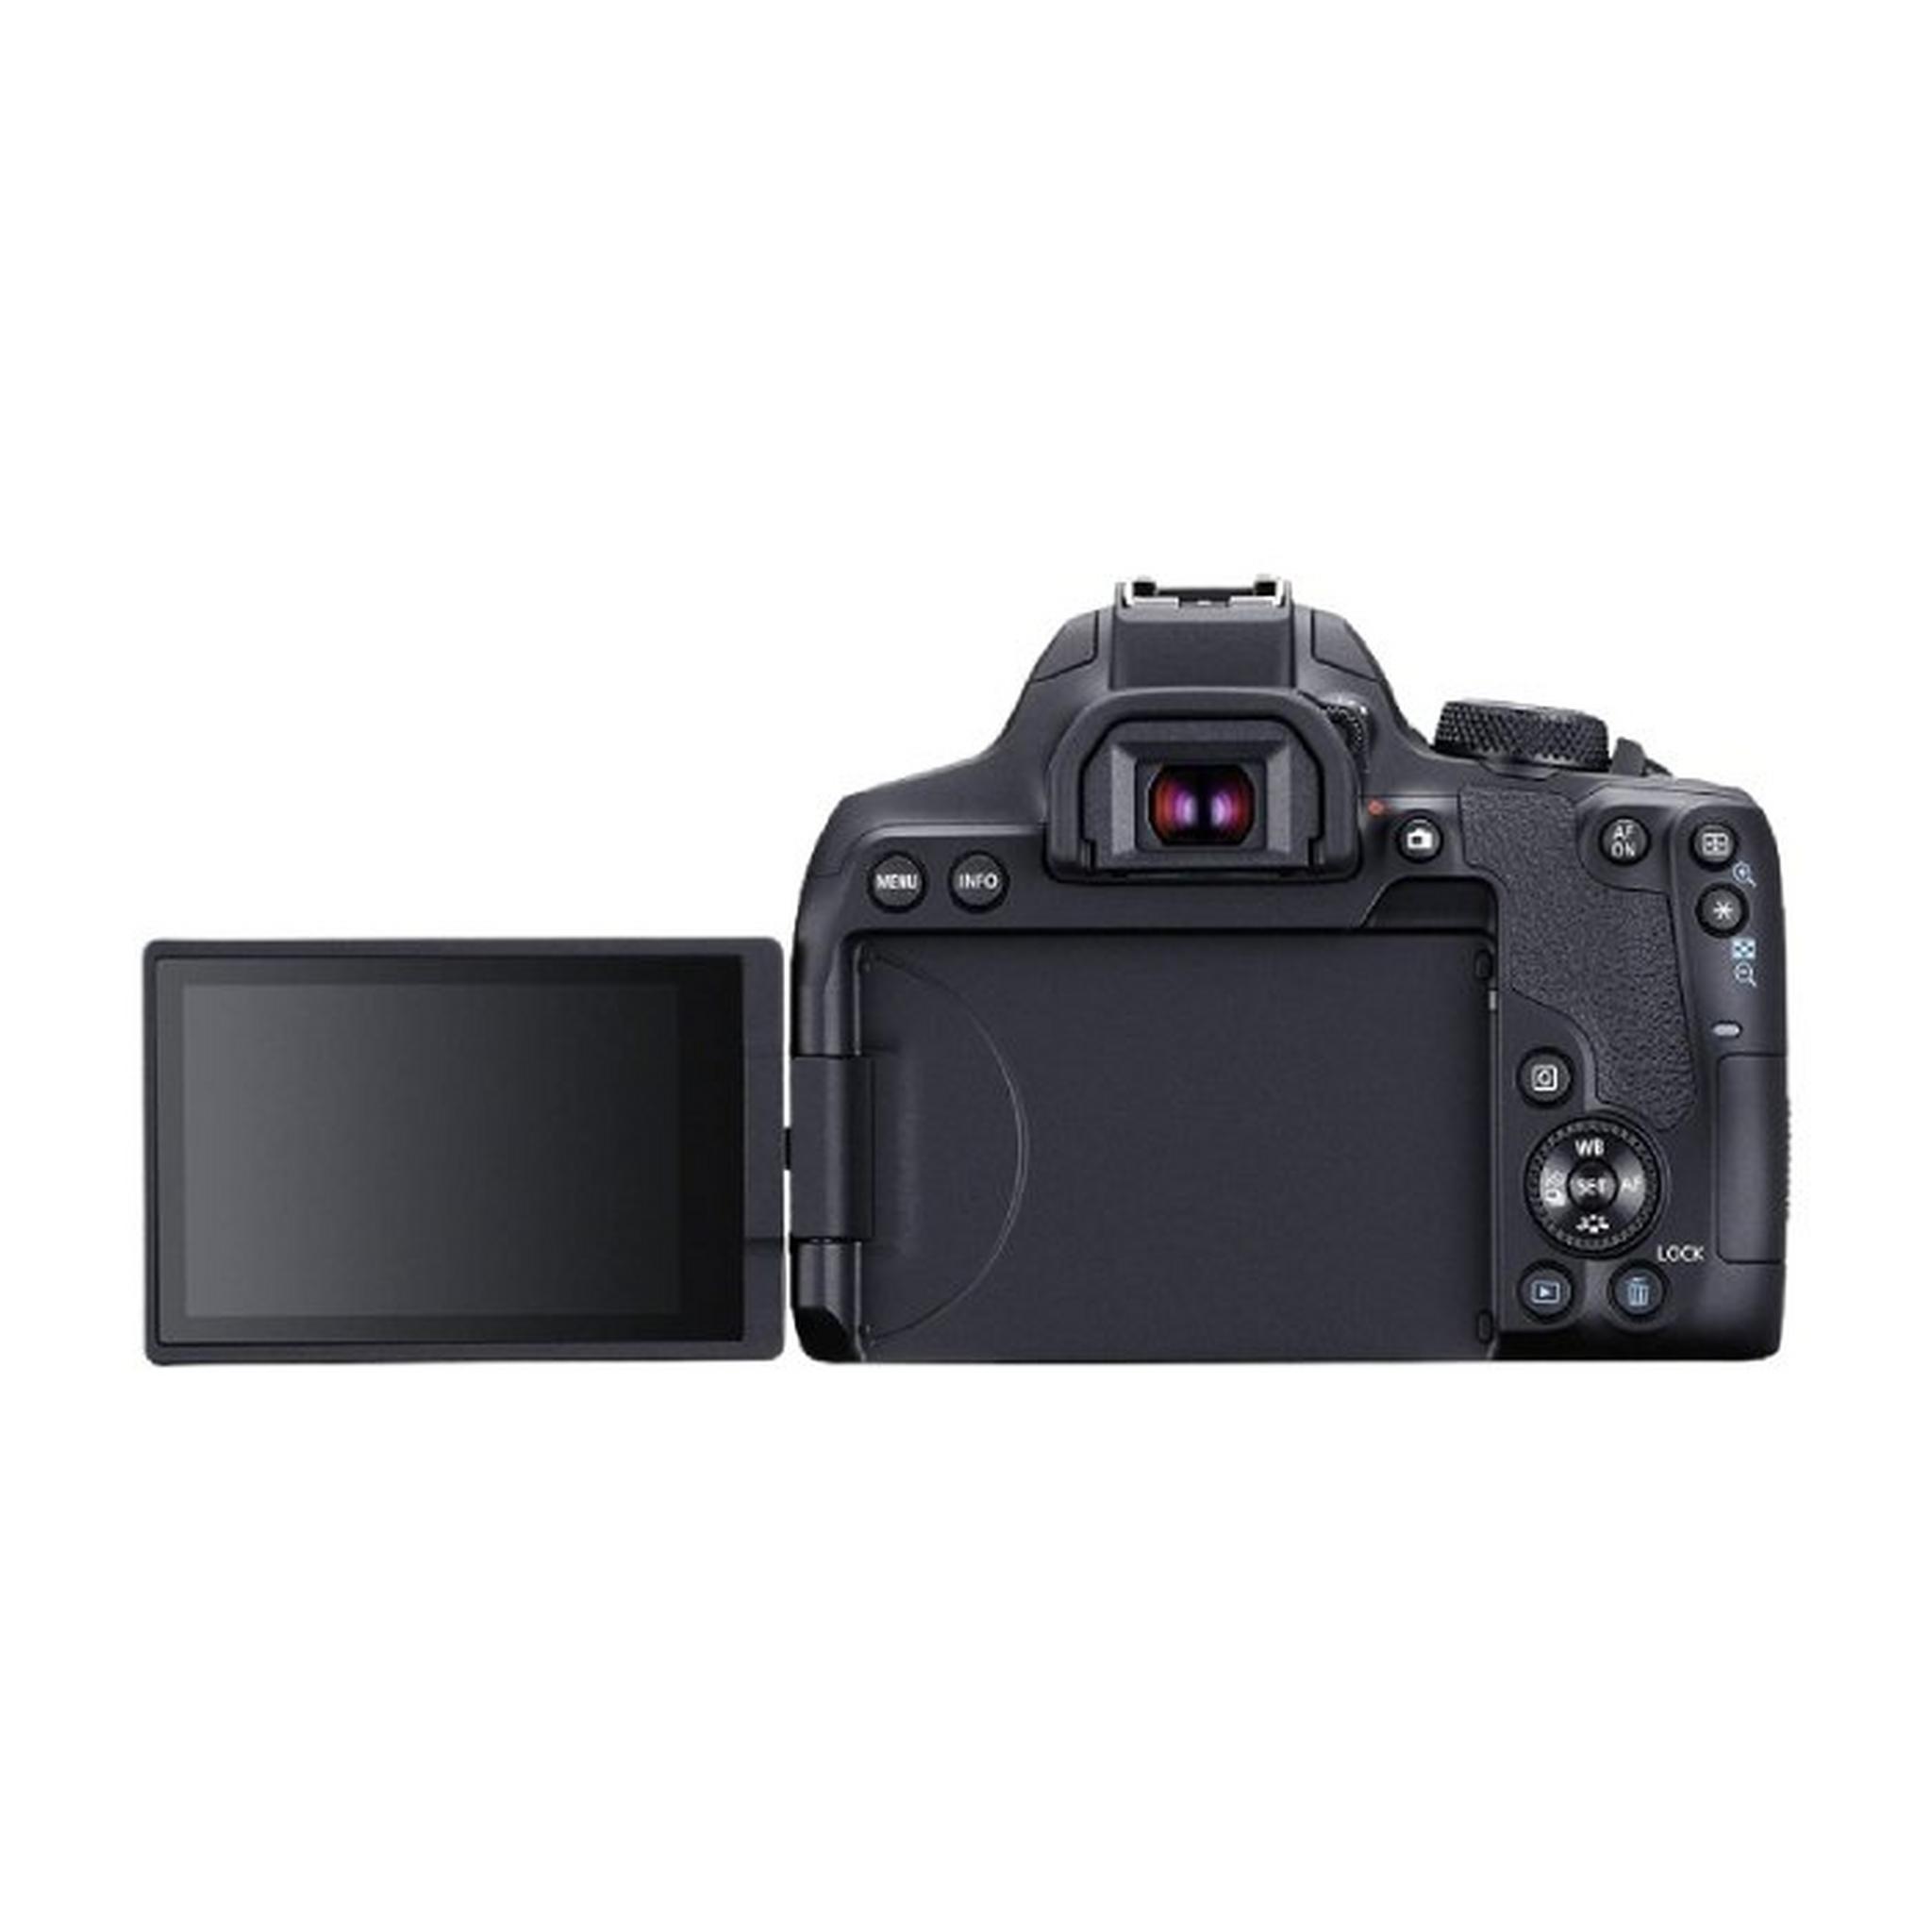 Canon EOS 850D DSLR Camera + EF-S 18-135mm f/3.5-5.6 IS USM Lens